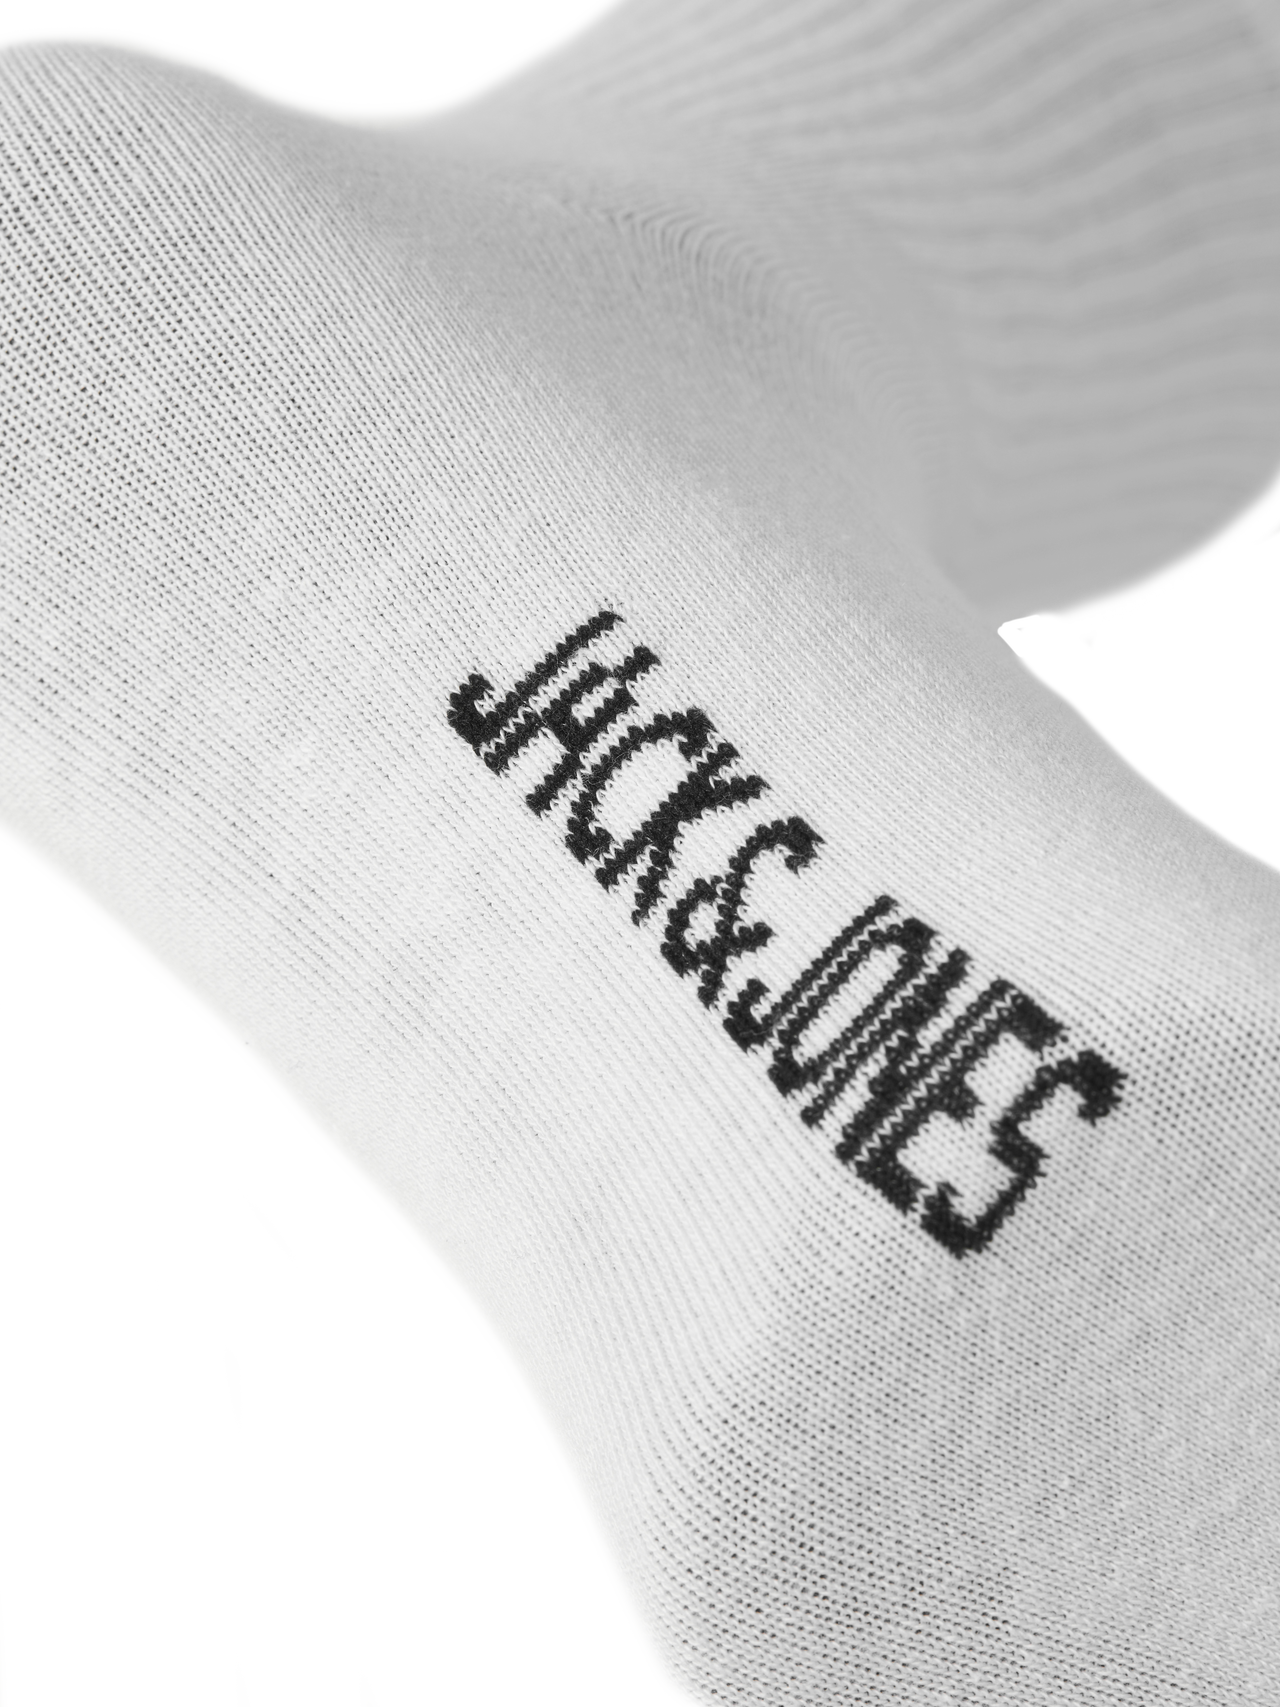 Jack & Jones 5er-pack Socken -White - 12254955